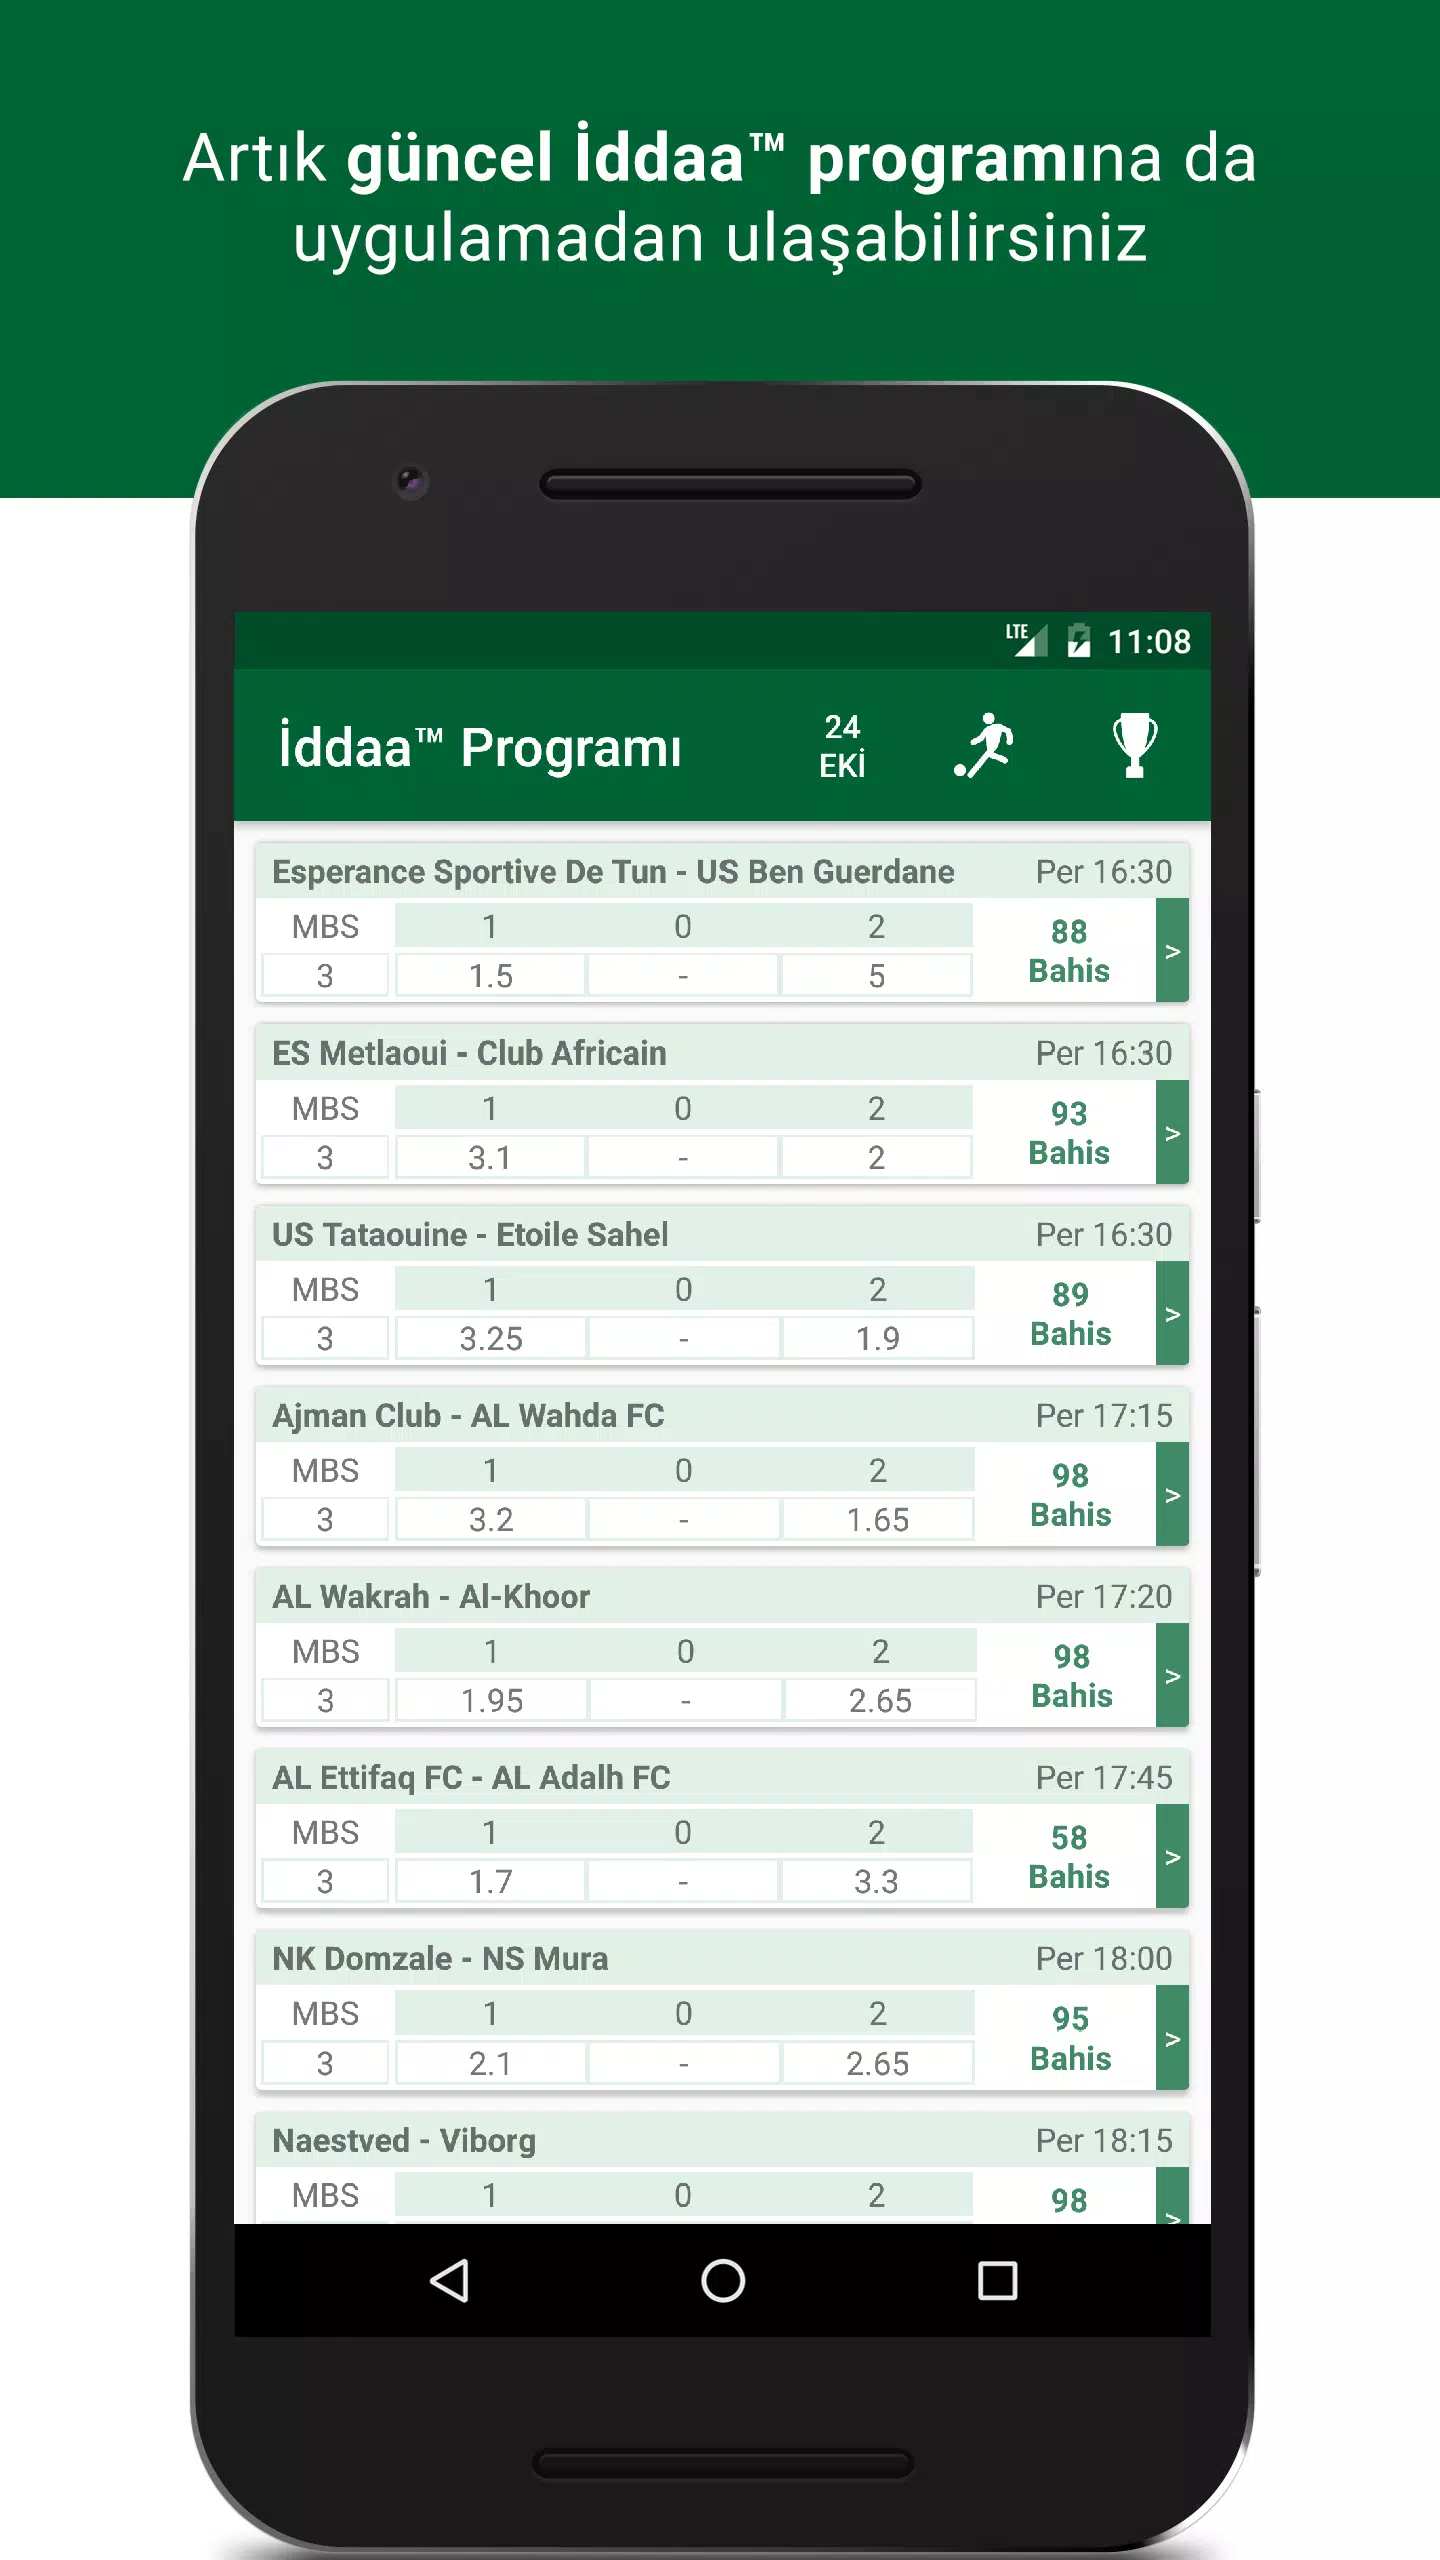 İddaa™ Program Kupon Skor APK for Android Download